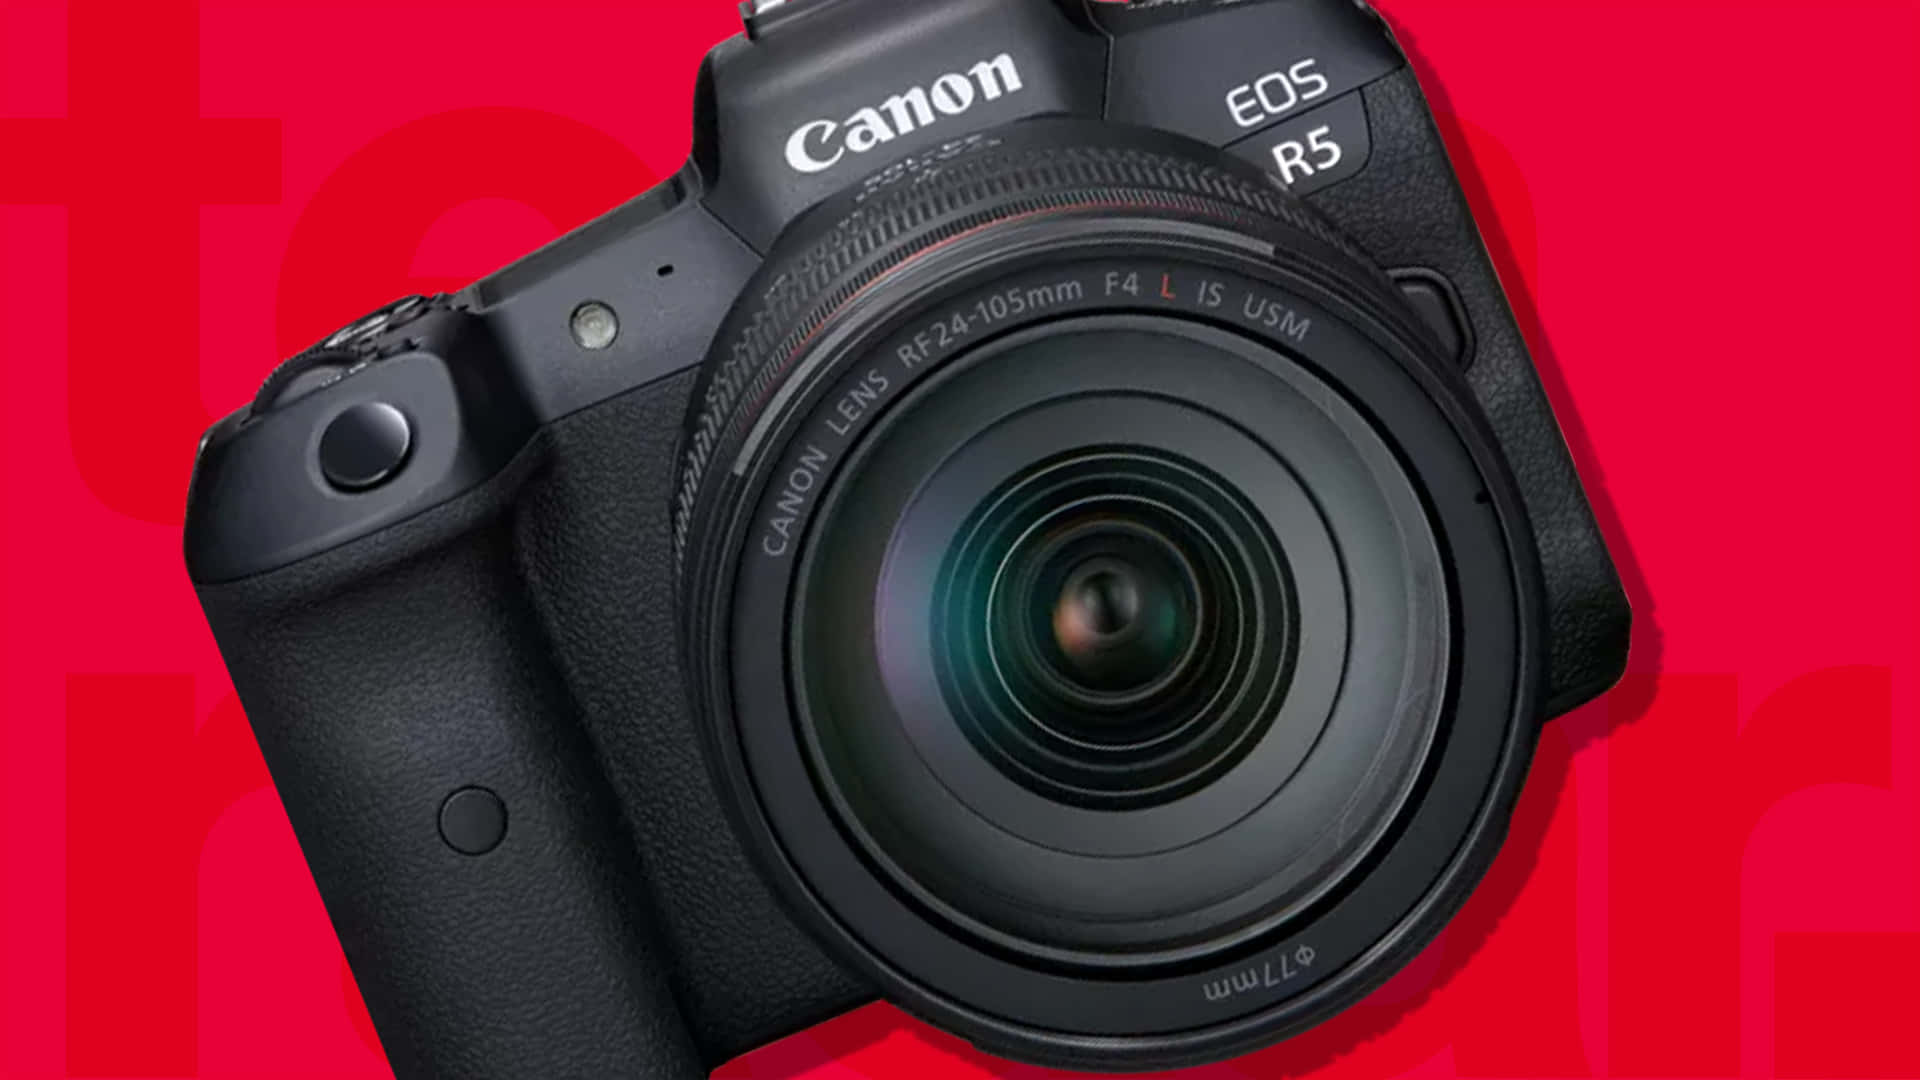 Canonr5 Fotocamera Con Sfondo Rosso